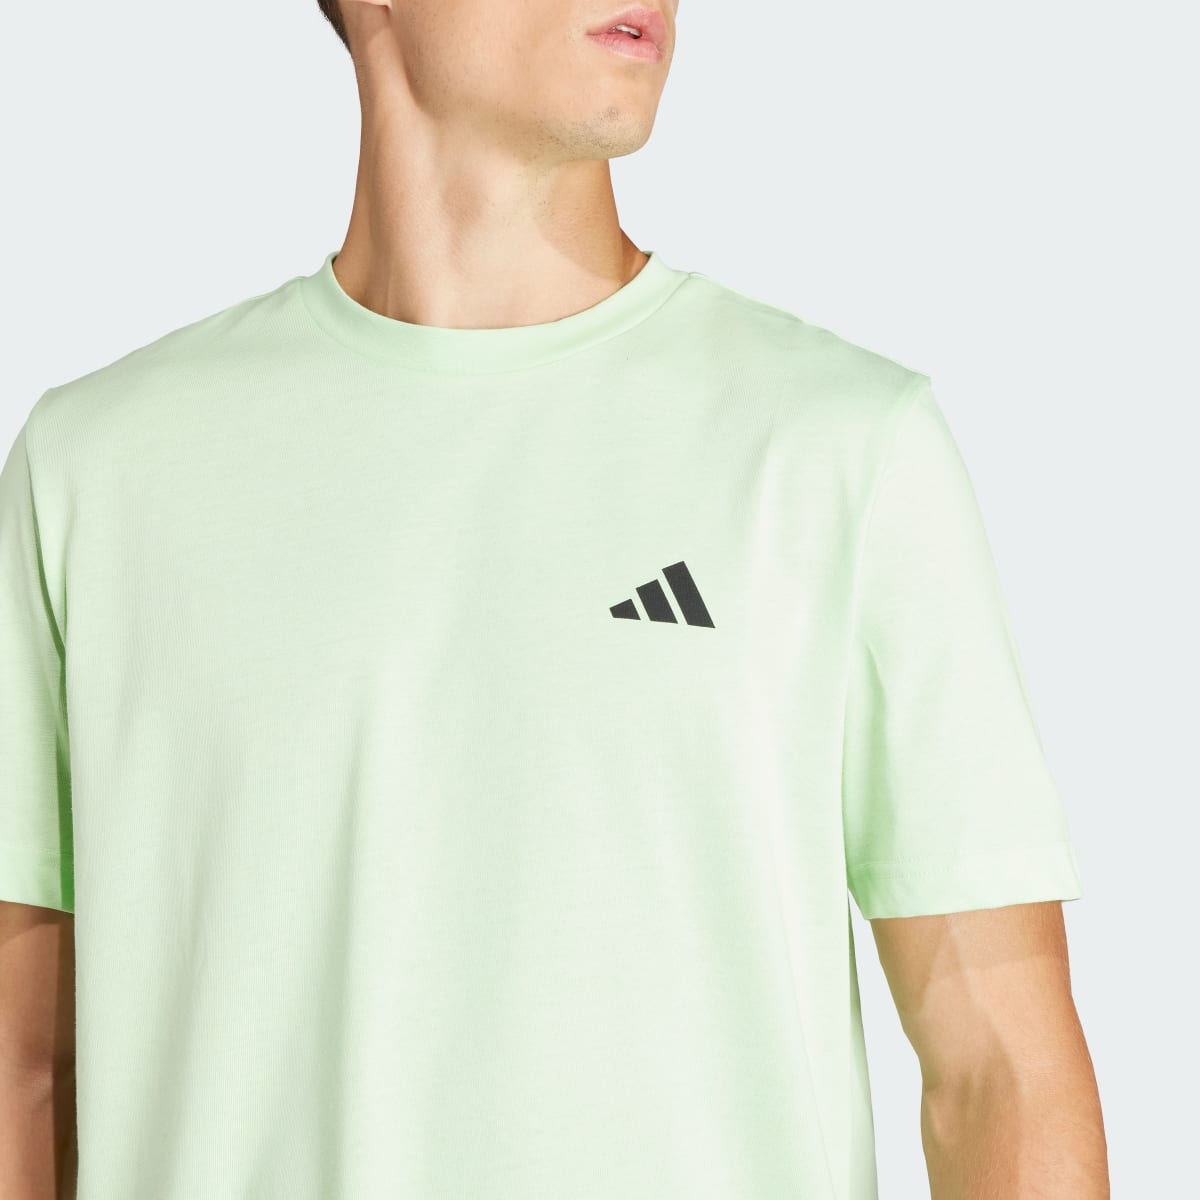 Adidas Running State Graphic T-Shirt. 7